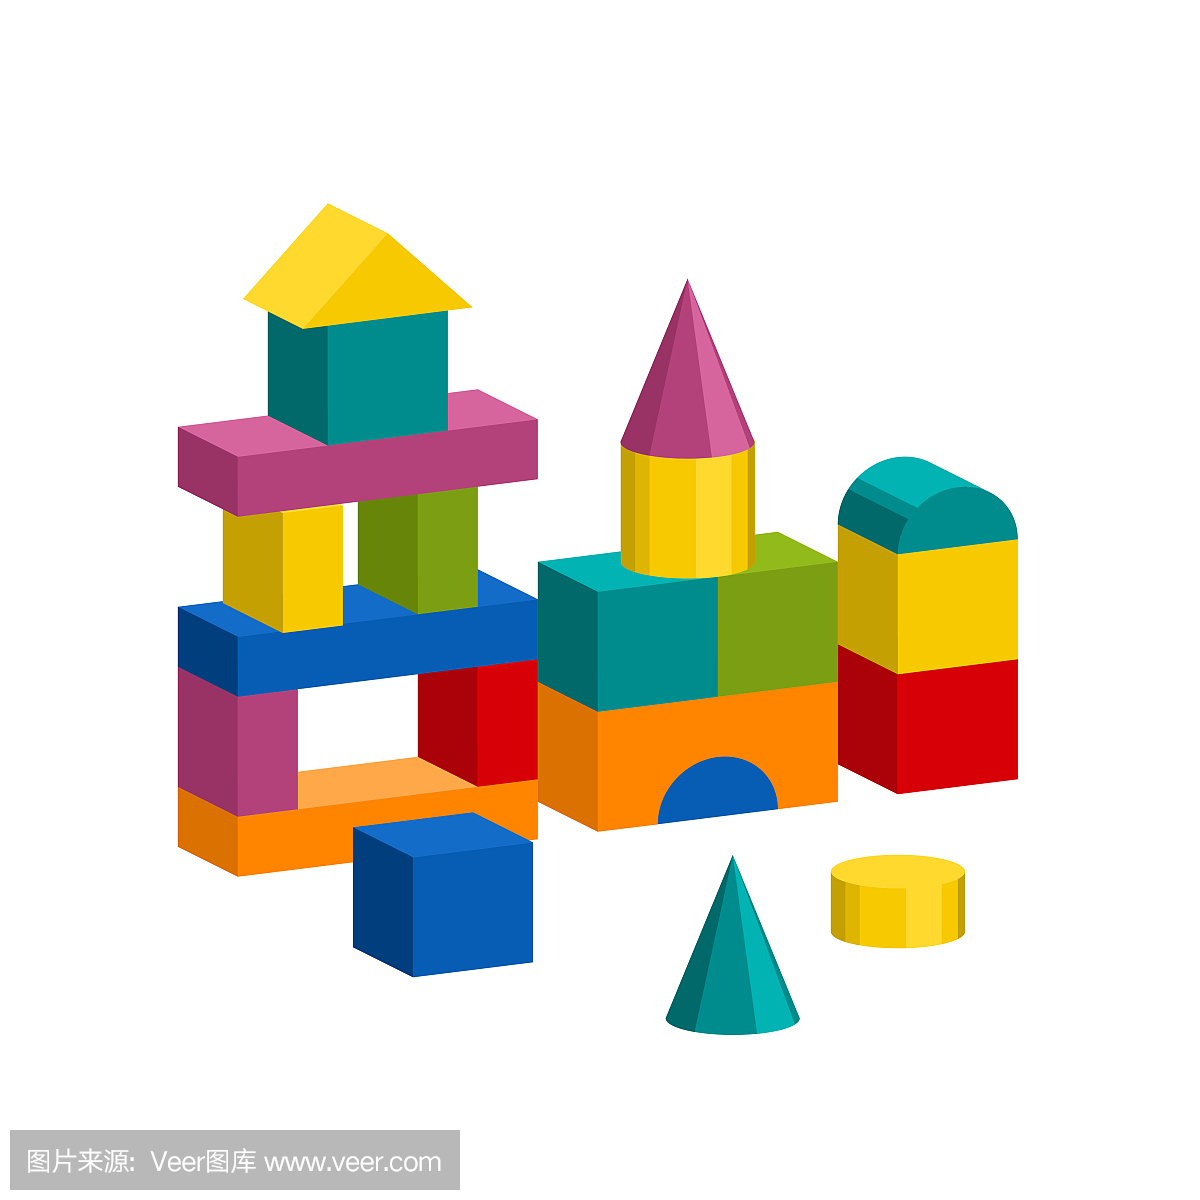 五颜六色的块玩具大厦塔,城堡,房子